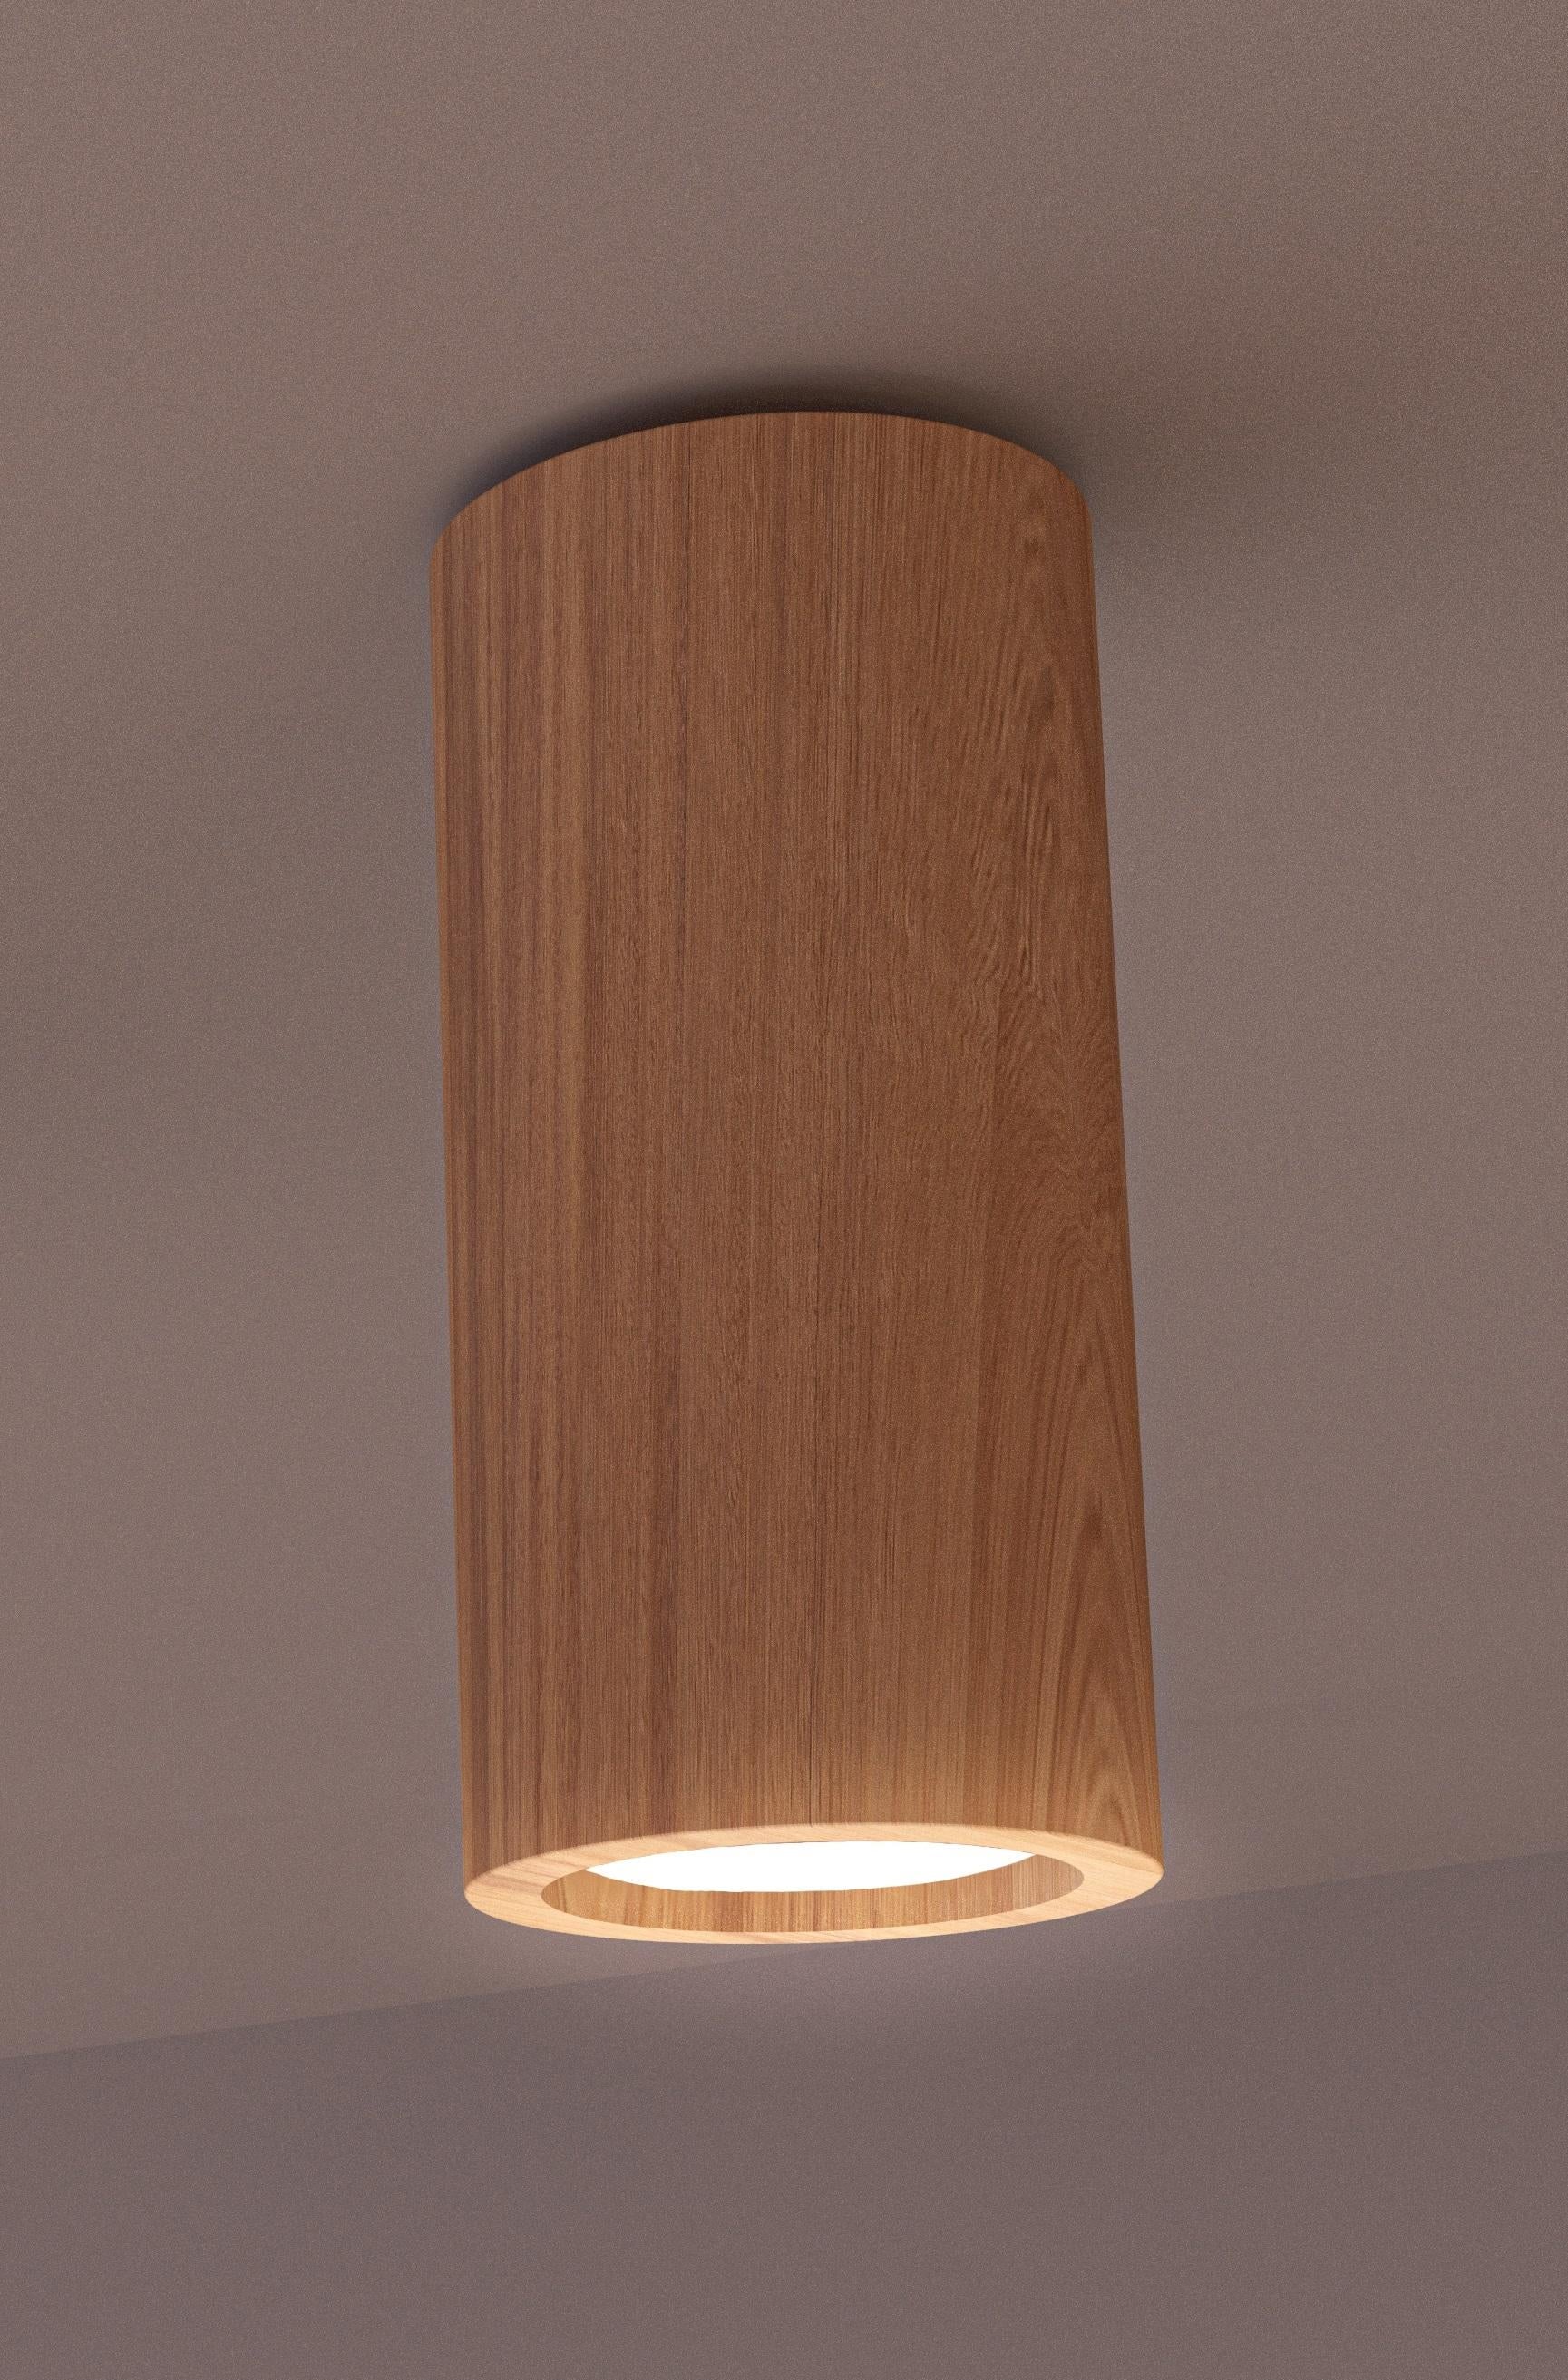 Henka Iroko-Holz-Leuchte von Alabastro Italiano
Abmessungen: Ø 7,2 x H 15 cm.
MATERIALIEN: Iroko-Holz.

Erhältlich in weißem Alabaster und Iroko-Holz. Bitte kontaktieren Sie uns.

Alle unsere Lampen können je nach Land verkabelt werden. Wenn es in